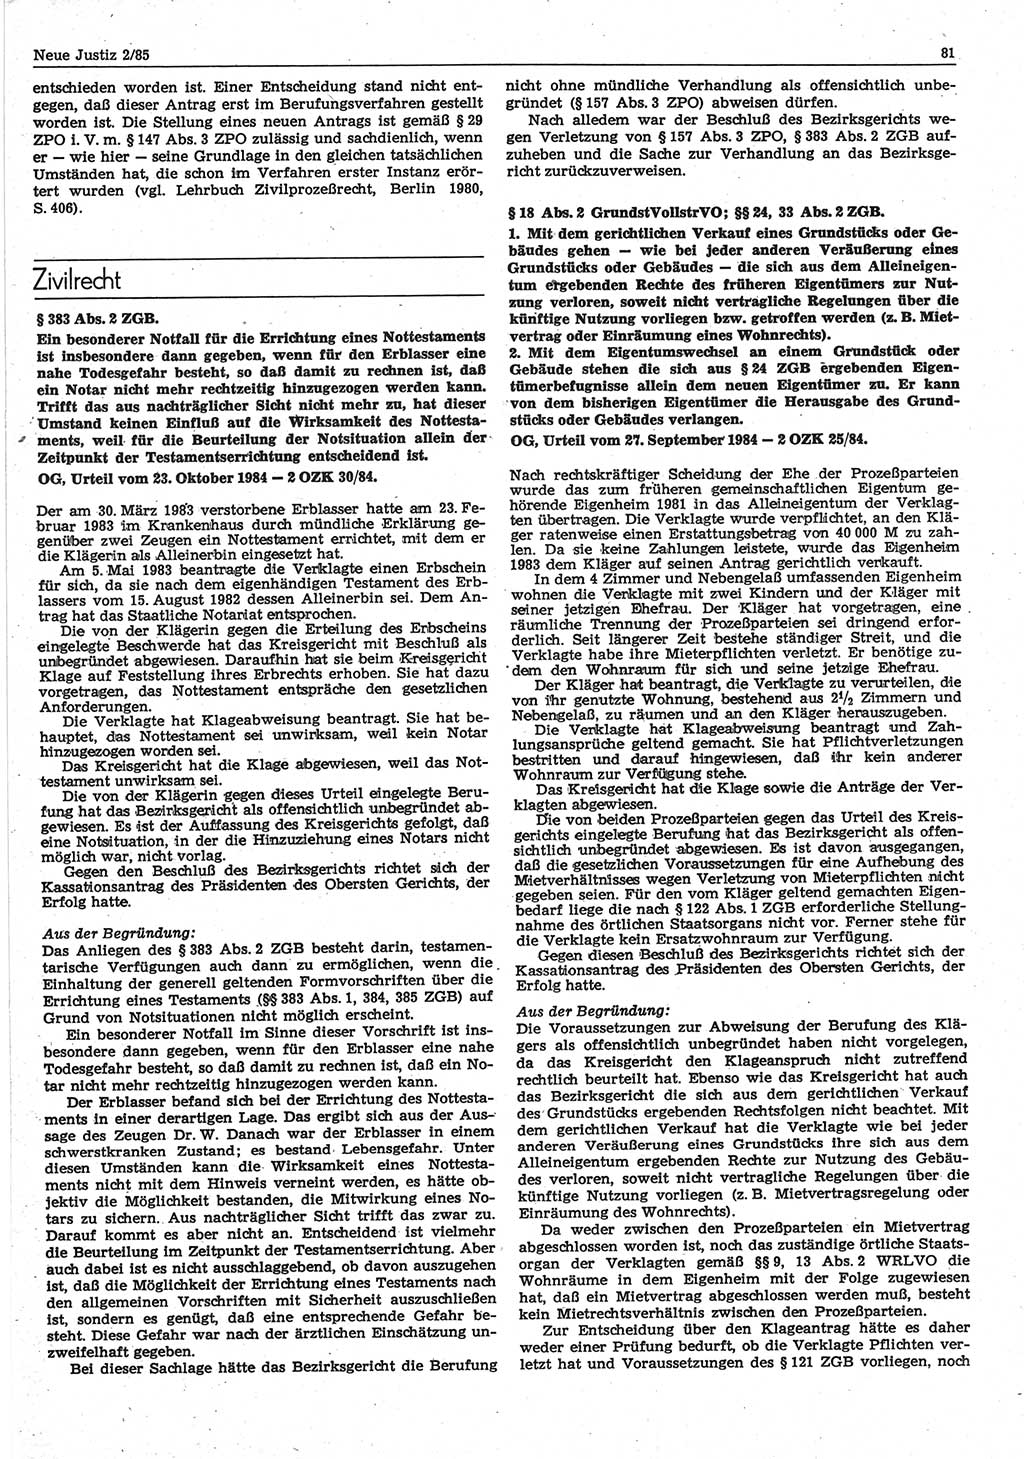 Neue Justiz (NJ), Zeitschrift für sozialistisches Recht und Gesetzlichkeit [Deutsche Demokratische Republik (DDR)], 39. Jahrgang 1985, Seite 81 (NJ DDR 1985, S. 81)